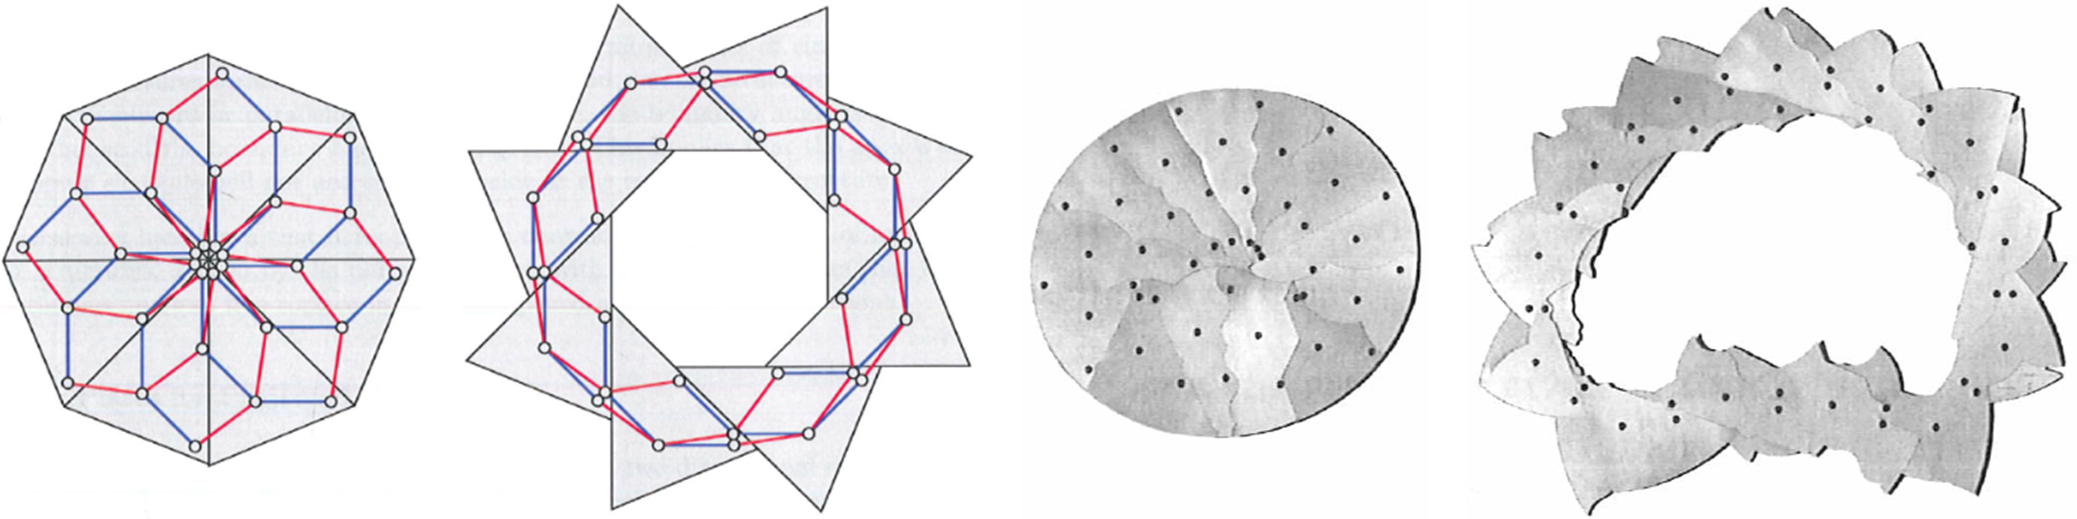 Diafragma de una cámara fotográfica con el respectivo modelo equivalente de barras quebradas y extrapolación del modelo a una geometría elíptica.